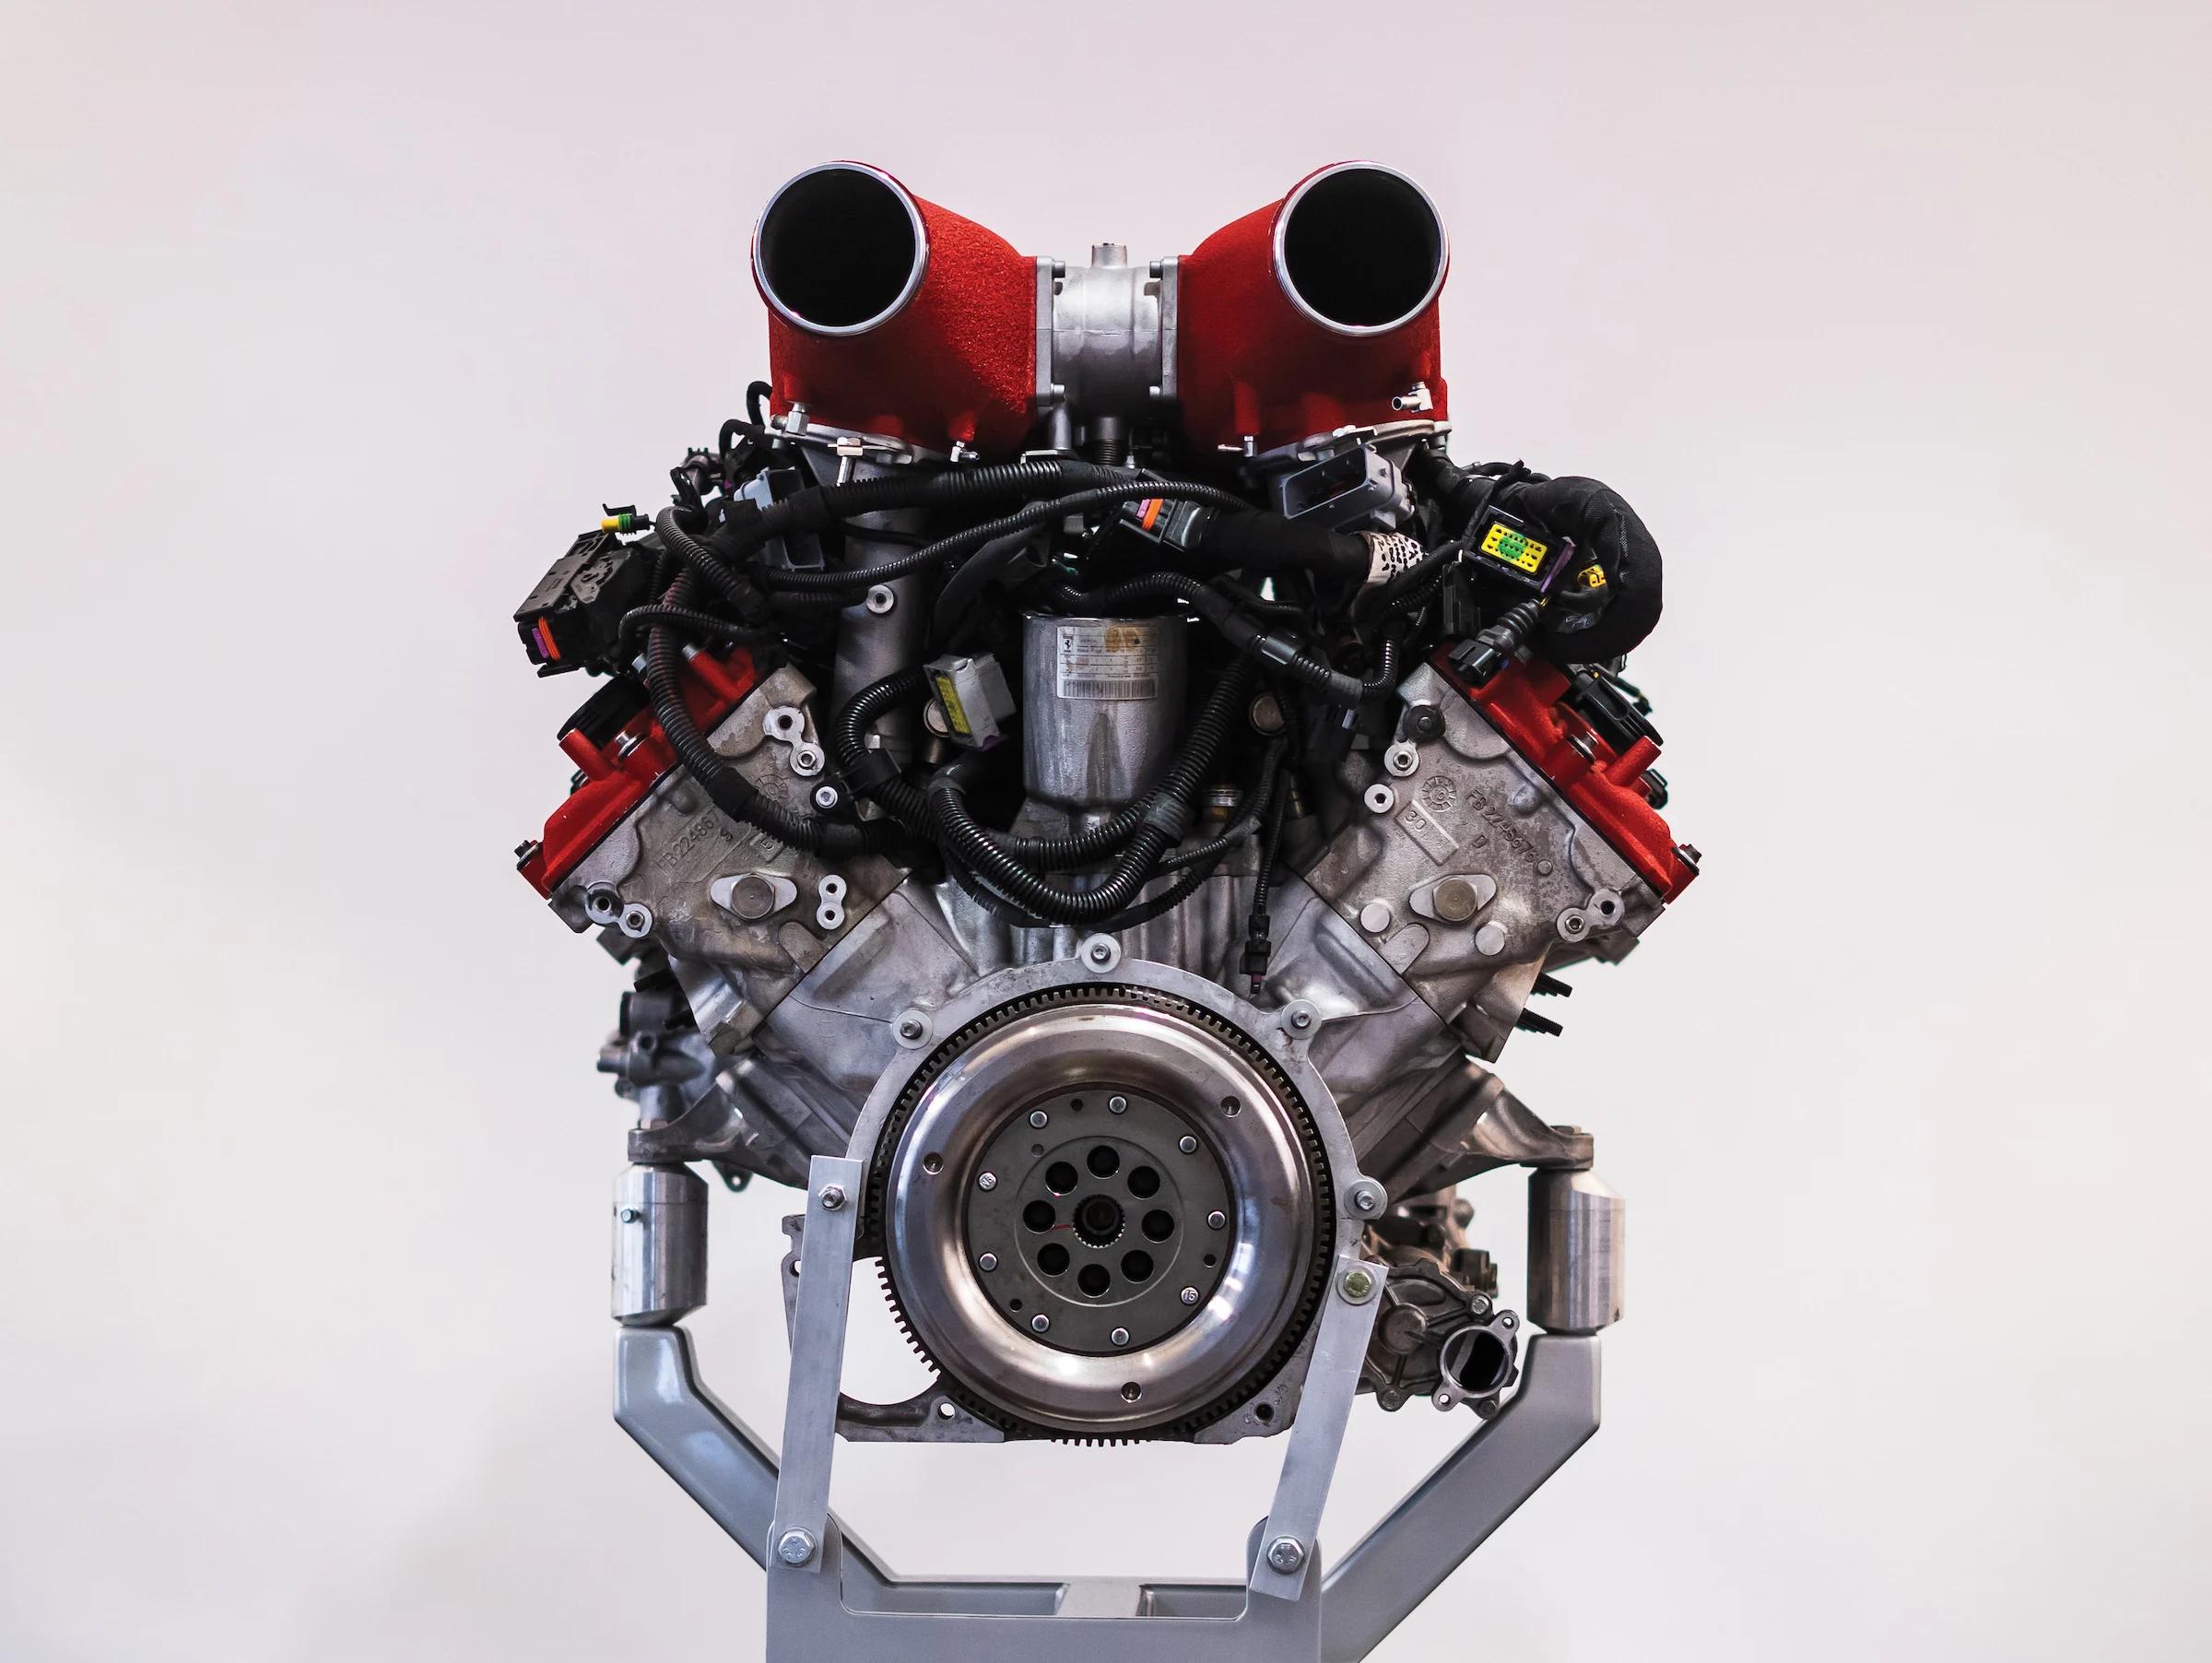 ferrari 458 v8 engine - What Ferrari has a 4.5 L V8